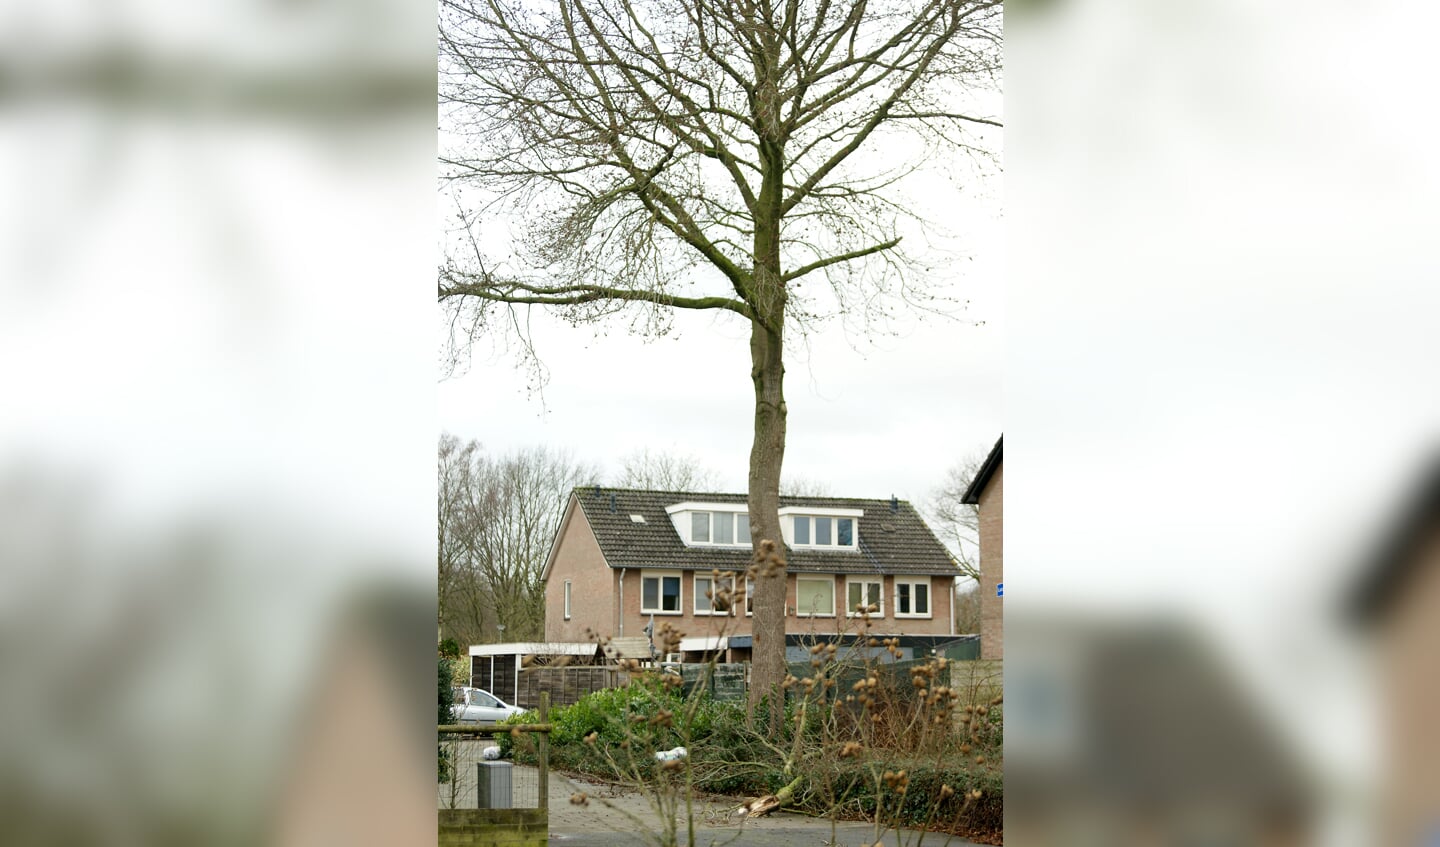 Takken braken af van bomen in Boxmeer. (foto: Jeff Meijs)